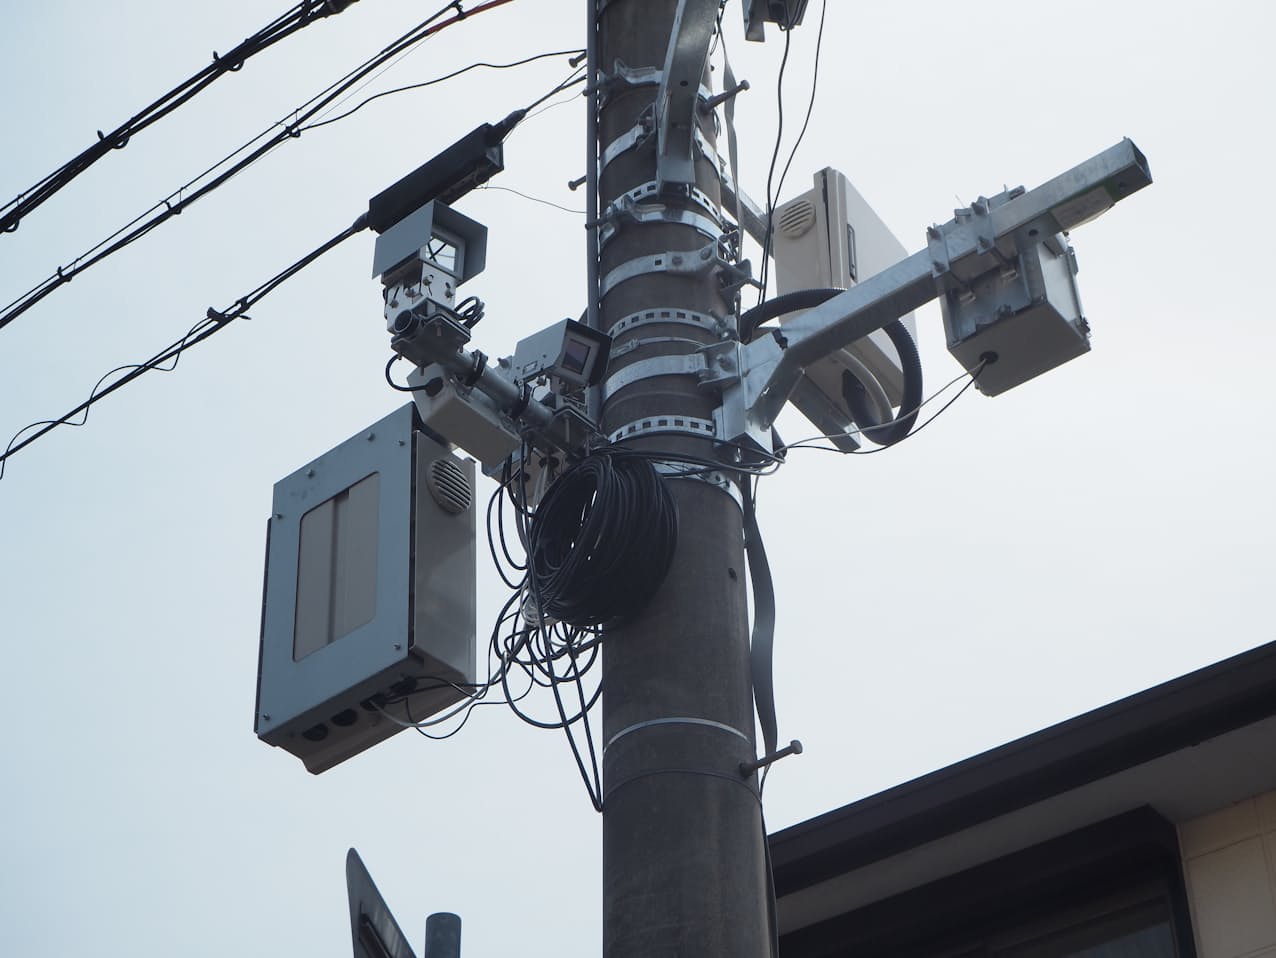 関西電力送配電はセンサー類などを搭載したスマート電柱の実証実験を公開した（19日、兵庫県三田市）